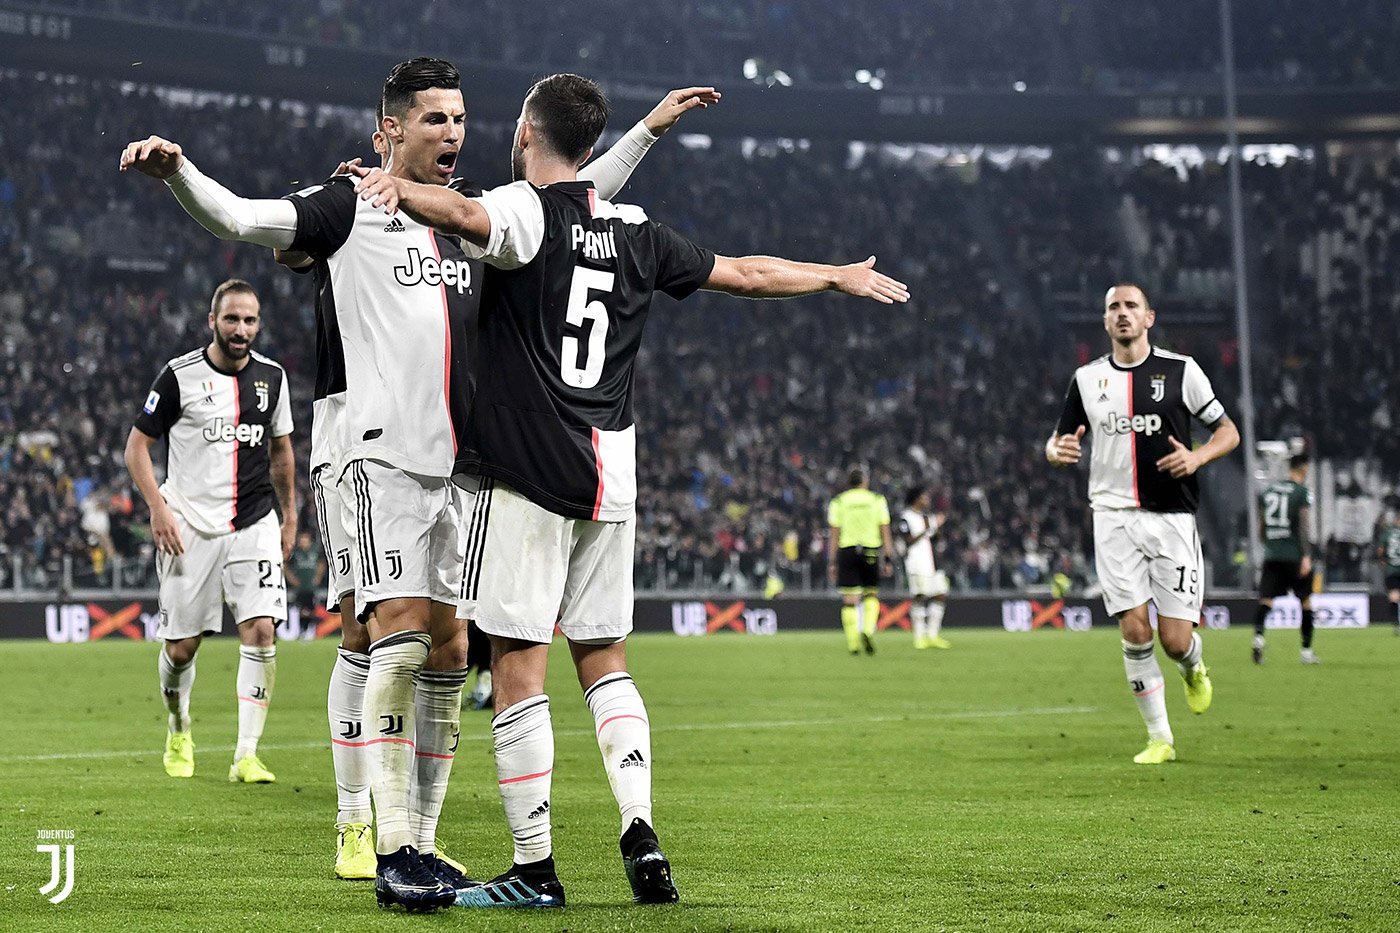 Nhận định kèo bóng đá: Bologna vs Juventus – 01h45 24/05/2021